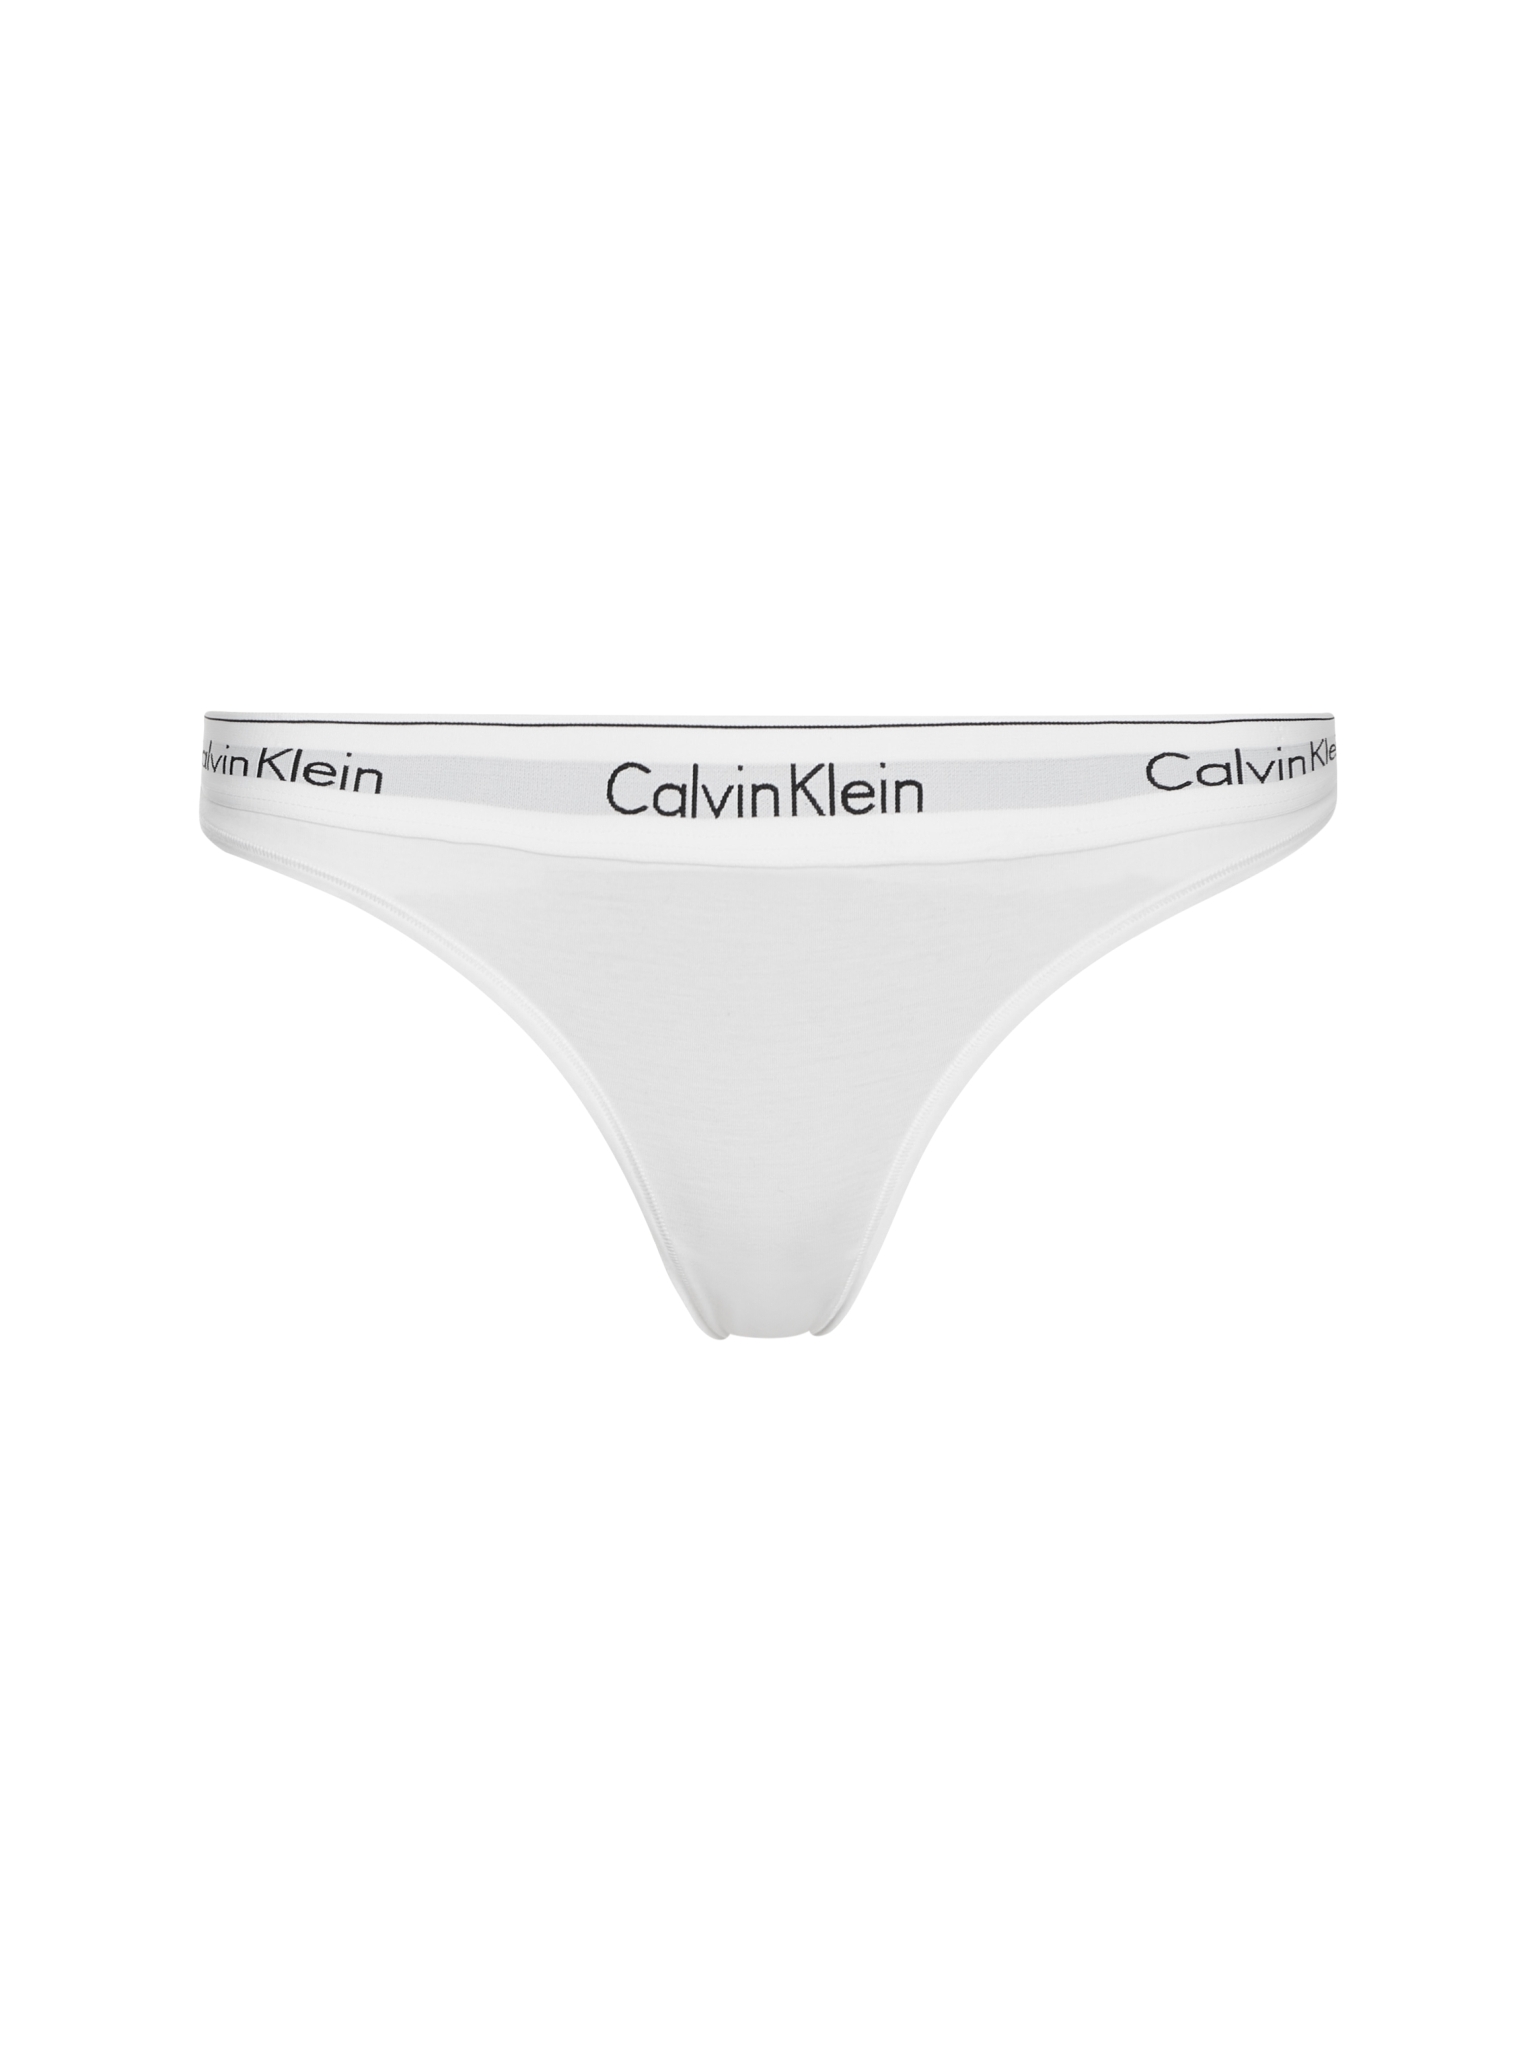 CALVIN KLEIN MODERN COTTON STRING 10497207